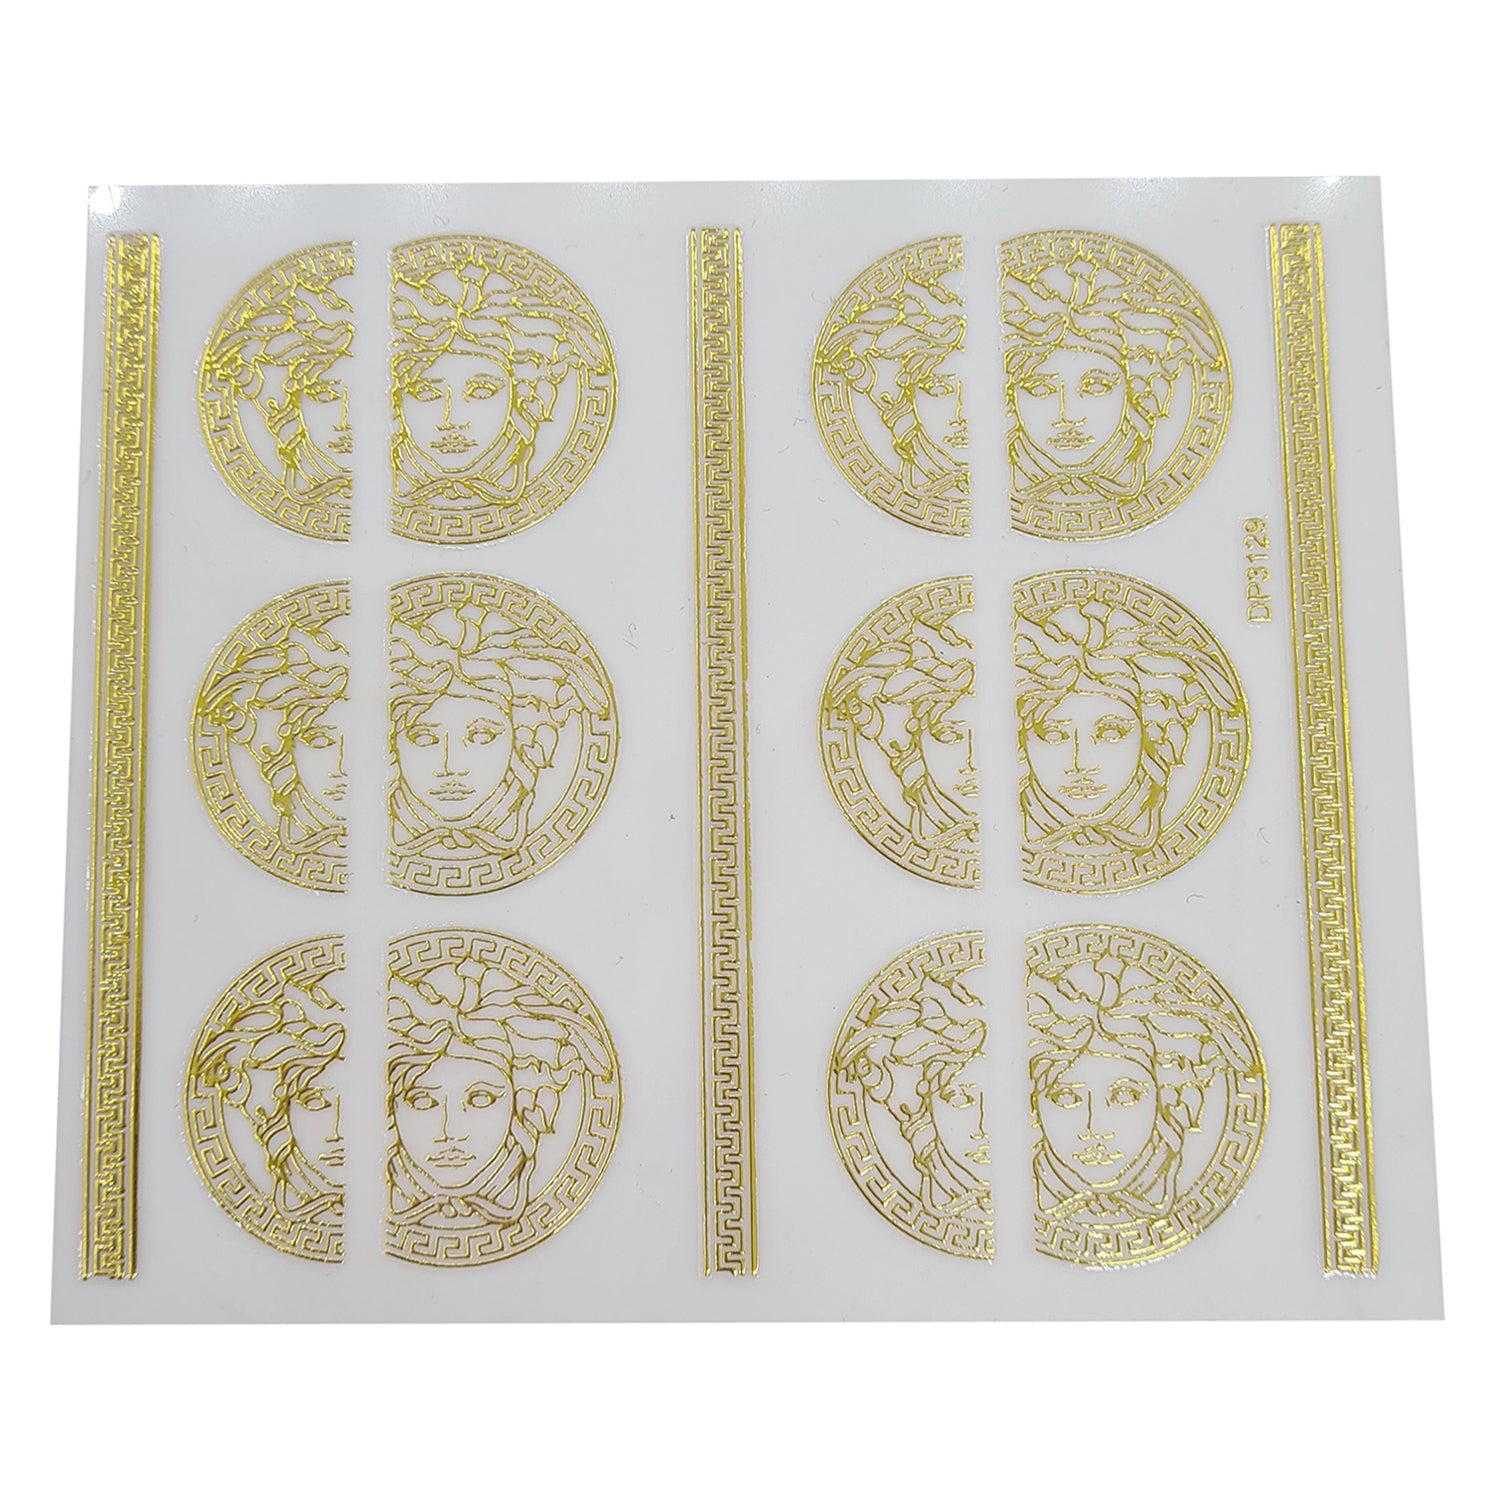 ATL- Supreme + Louis Vuitton Nail Art Stickers 3-10-1